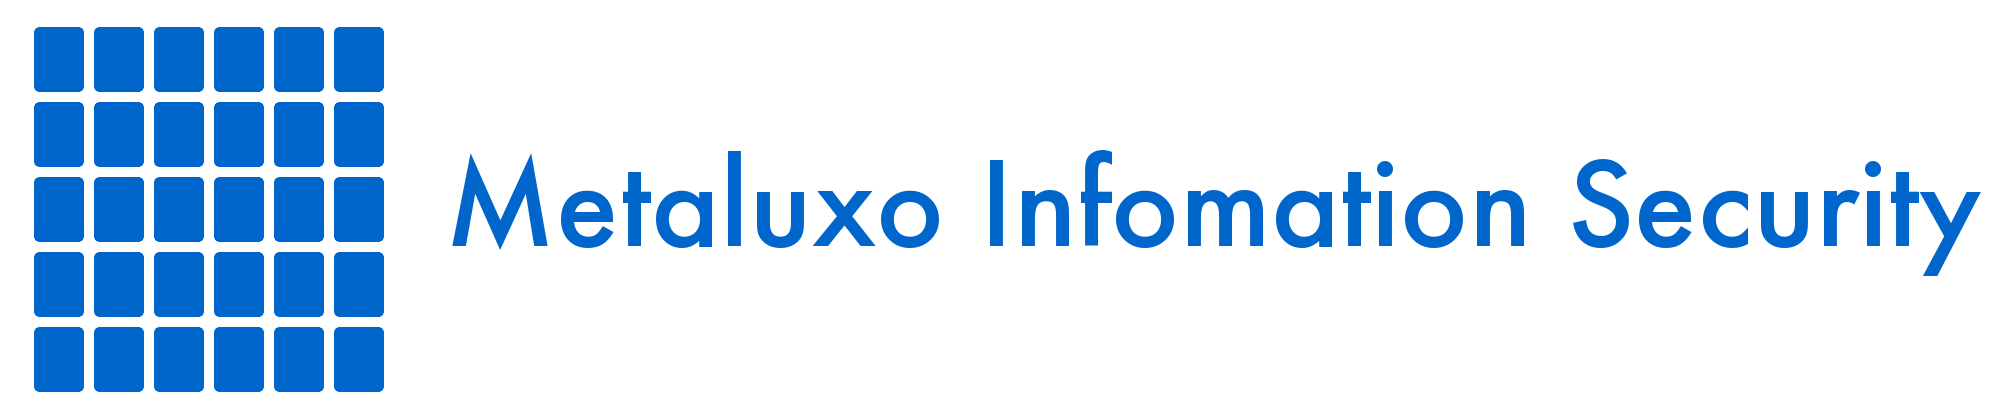 Metaluxo Information Security